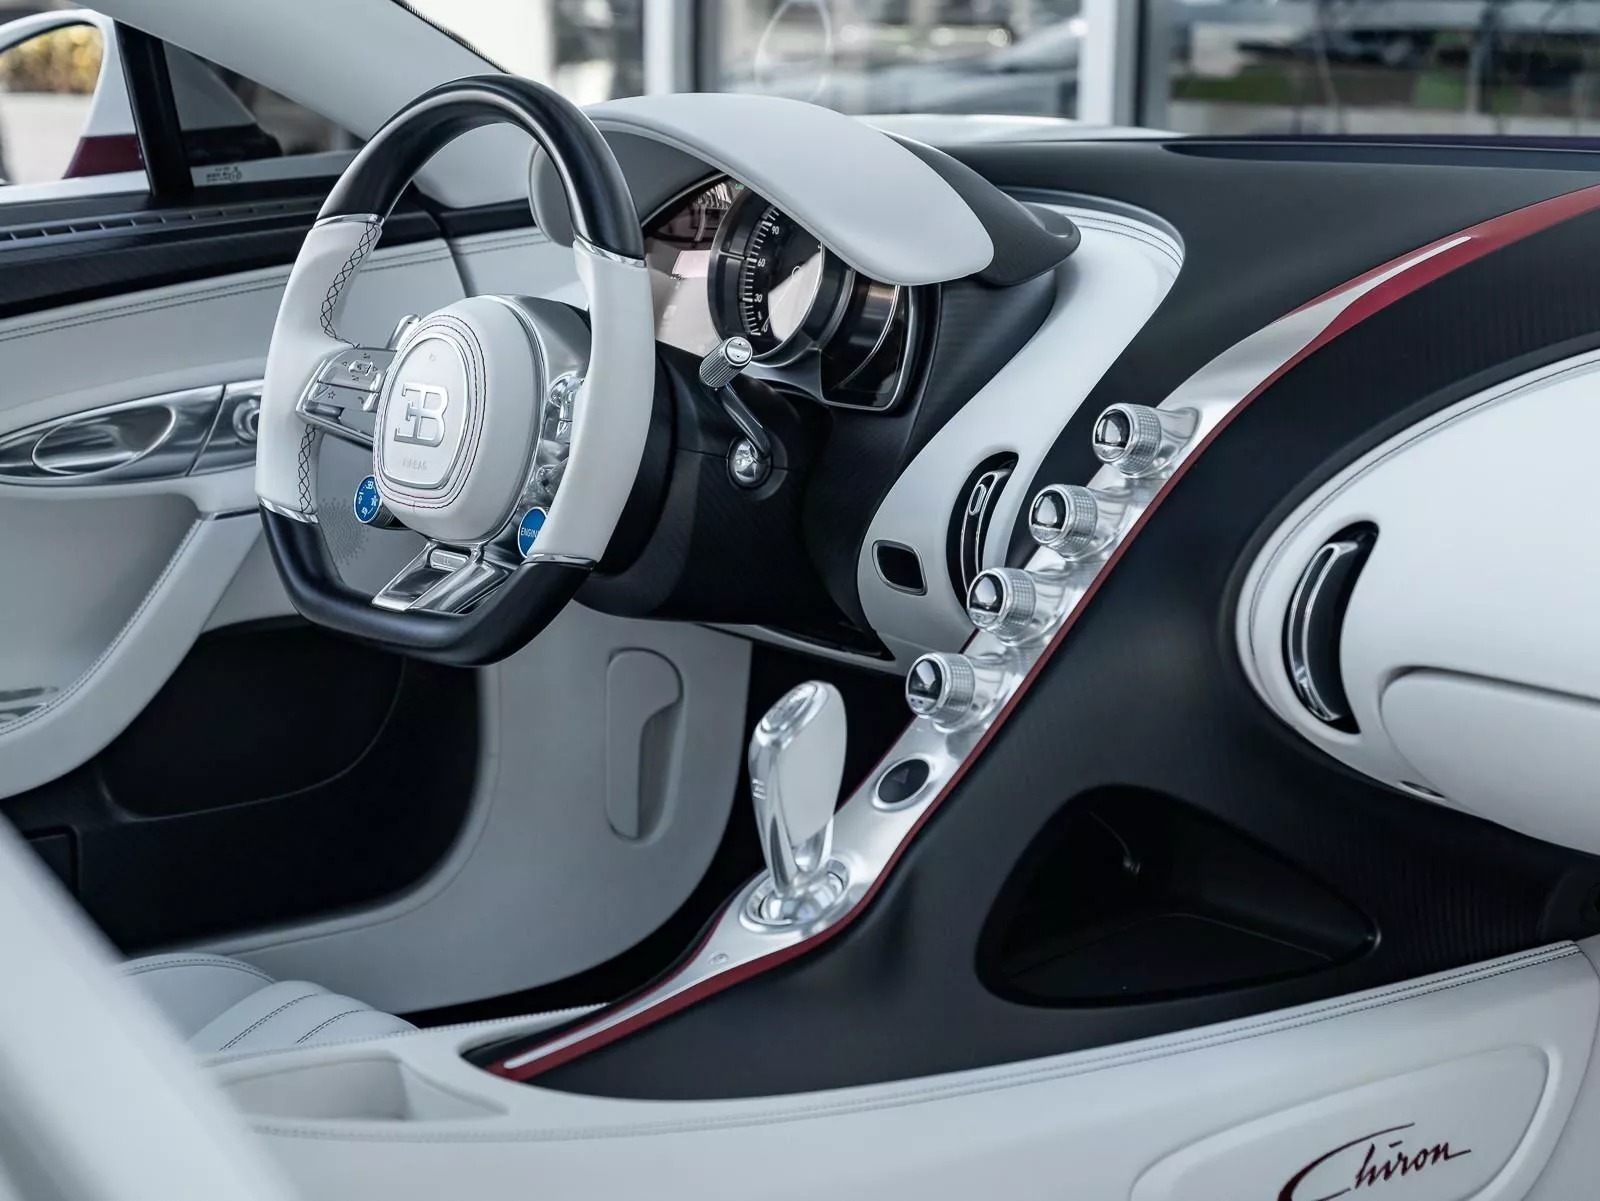 Rao bán Bugatti Chiron giá quy đổi hơn 95 tỷ đồng, chủ xe hứa tặng kèm Rolls-Royce Wraith hợp tông màu- Ảnh 5.